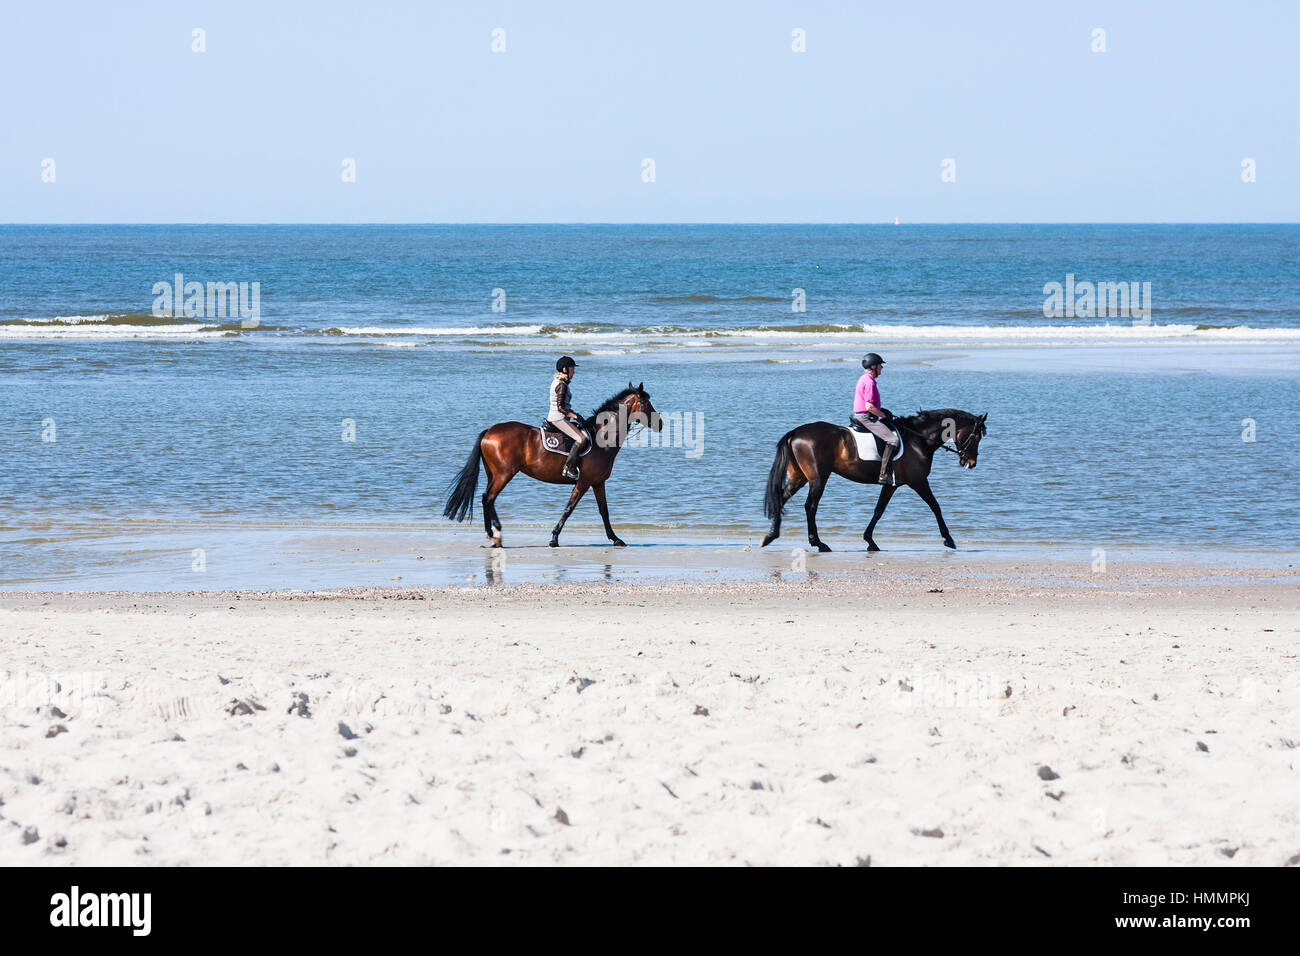 Norderney - 9 maggio: due persone a cavallo sulla spiaggia del Mare del Nord in Norderney, Germania il 10 maggio 2013 Foto Stock